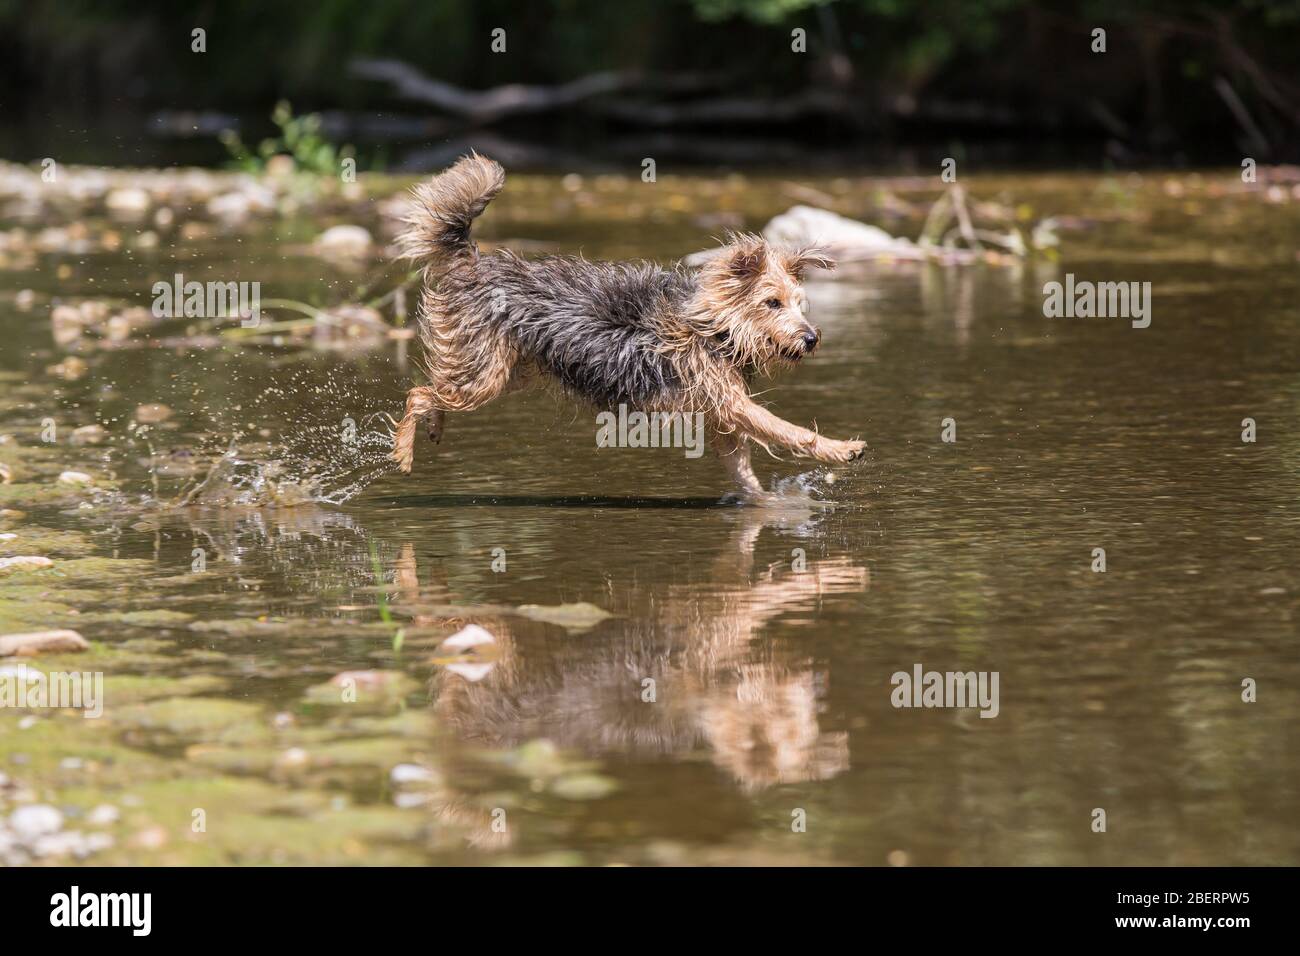 Porträt eines jungen Terrier-Hundes. Nahaufnahme eines glücklichen Hundes, der an einem sonnigen Tag in das kalte Wasser eines kleinen Flusses springt, Leitha, Österreich Stockfoto